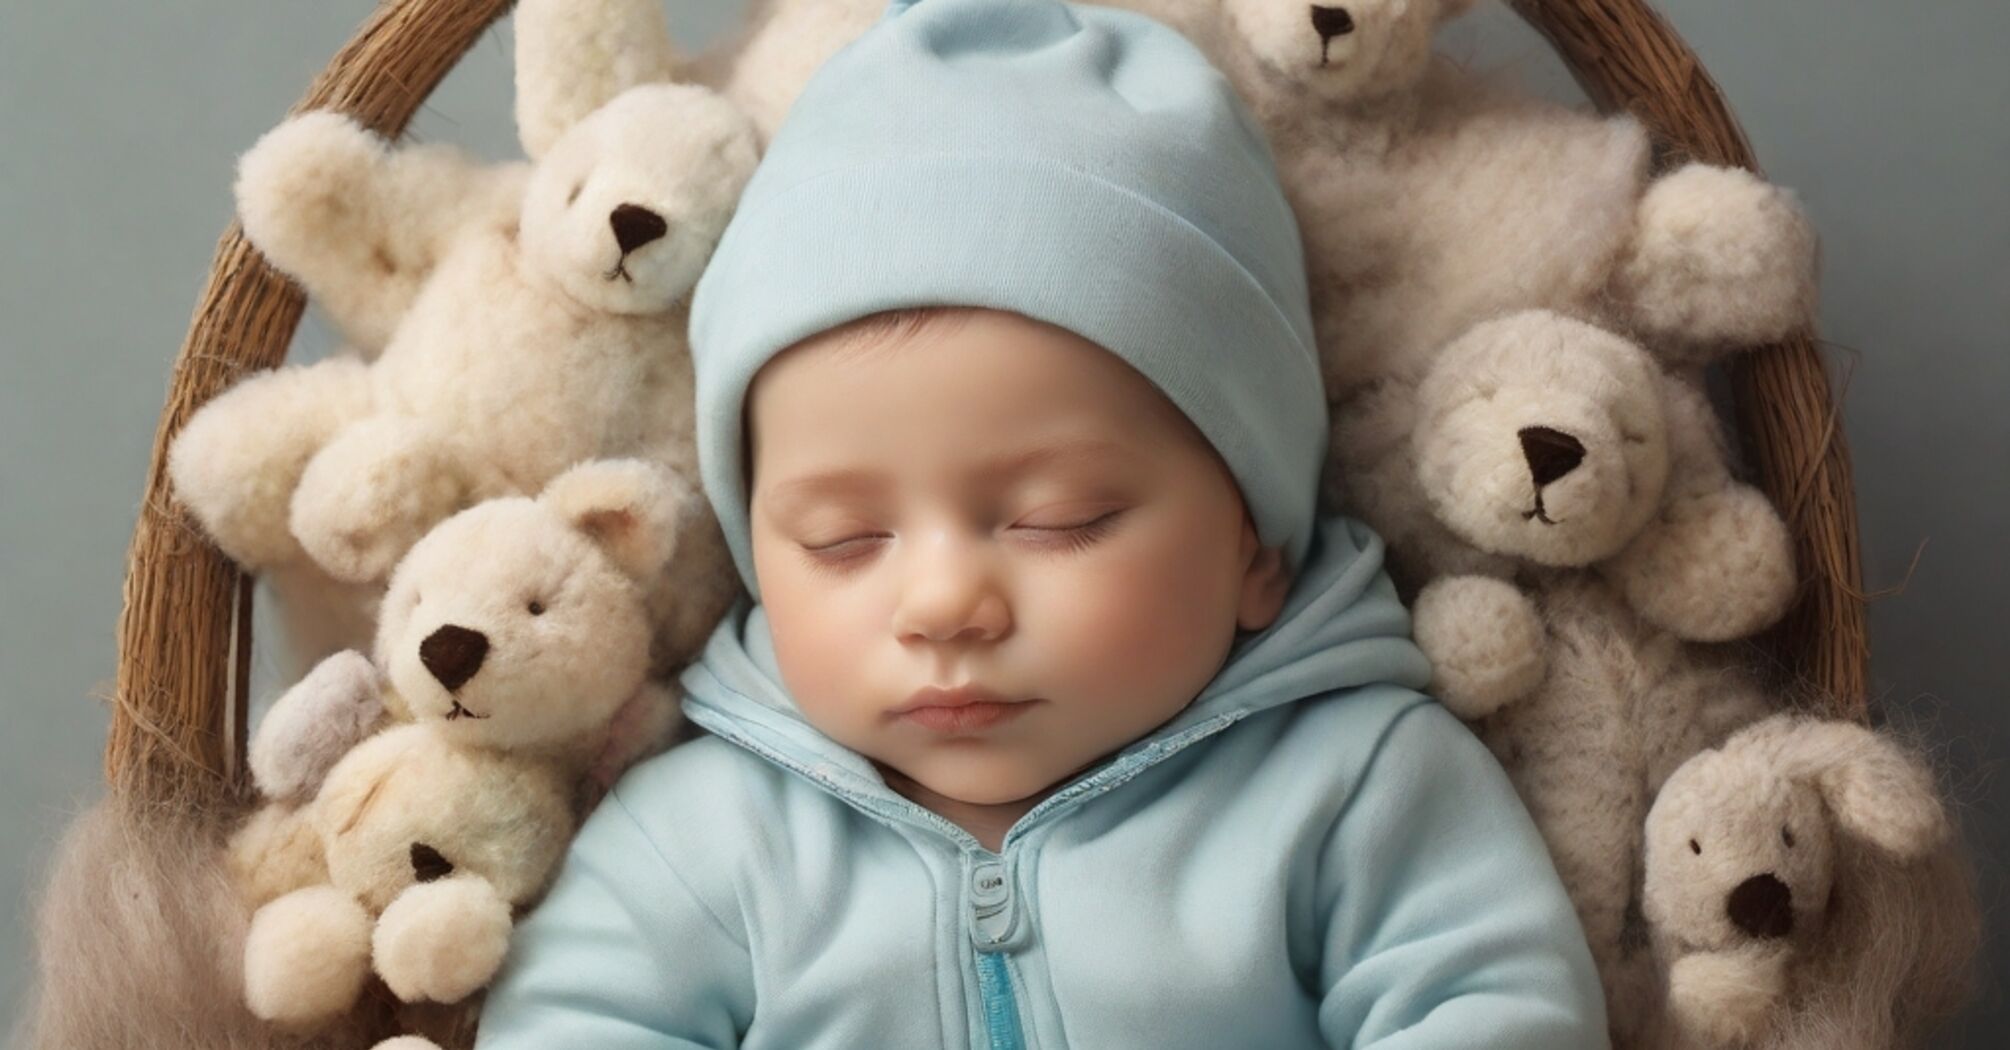 Недосып в детском возрасте приводит к роковым последствиям.